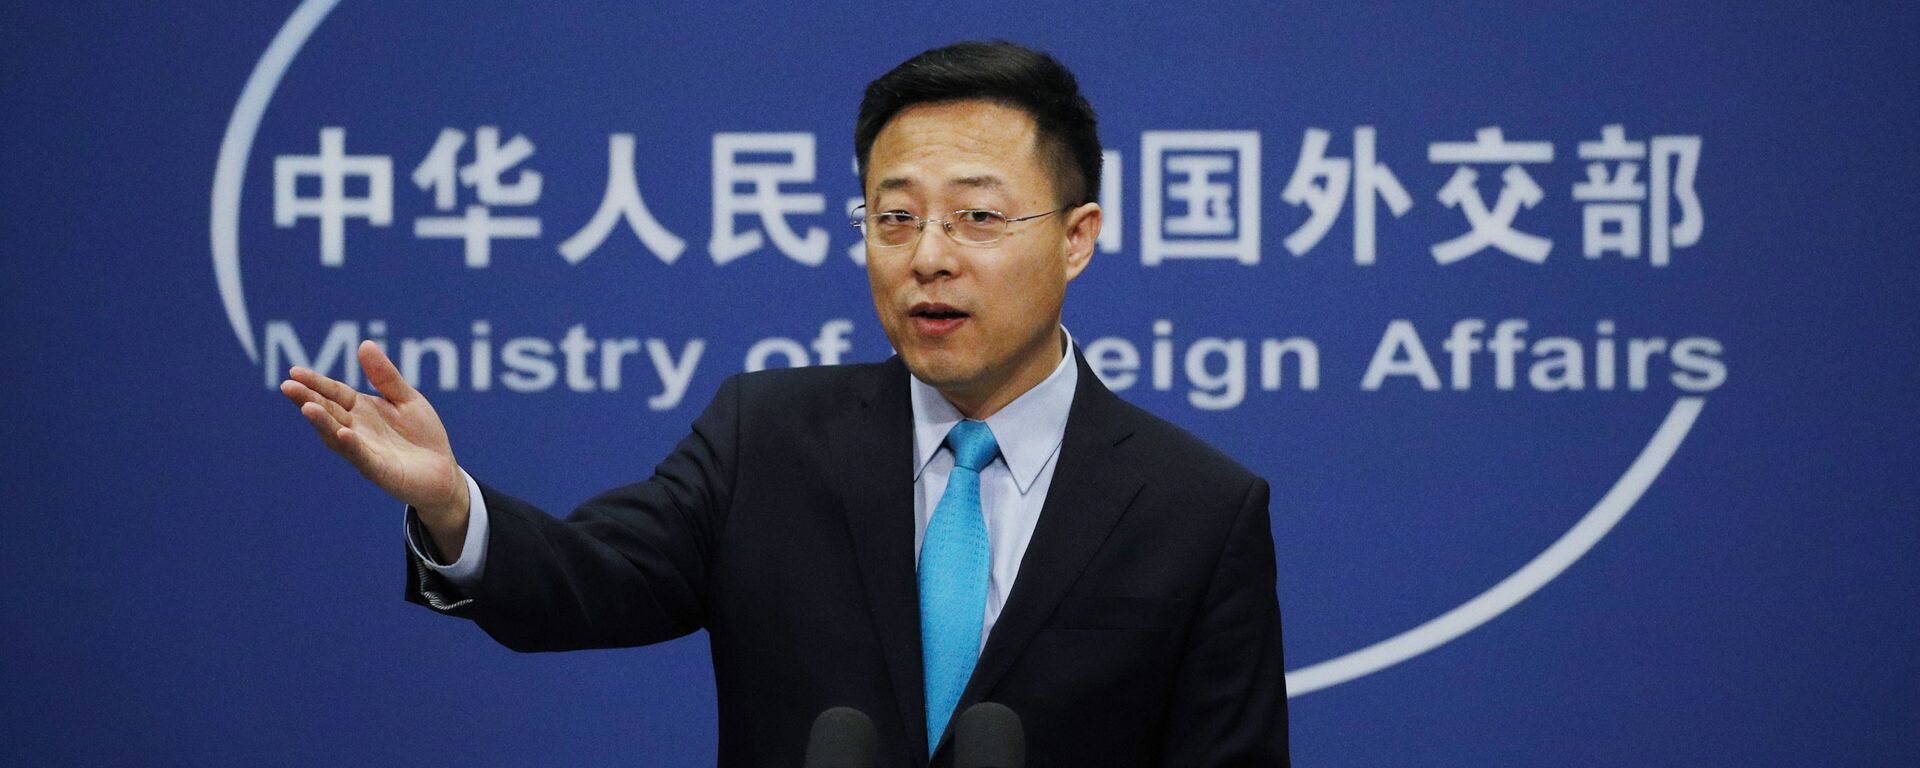 O porta-voz do Ministério das Relações Exteriores da China, Zhao Lijian, gesticula durante uma declaração em Pequim no escritório da Chancelaria chinesa, em 24 de fevereiro de 2020. - Sputnik Brasil, 1920, 08.05.2022